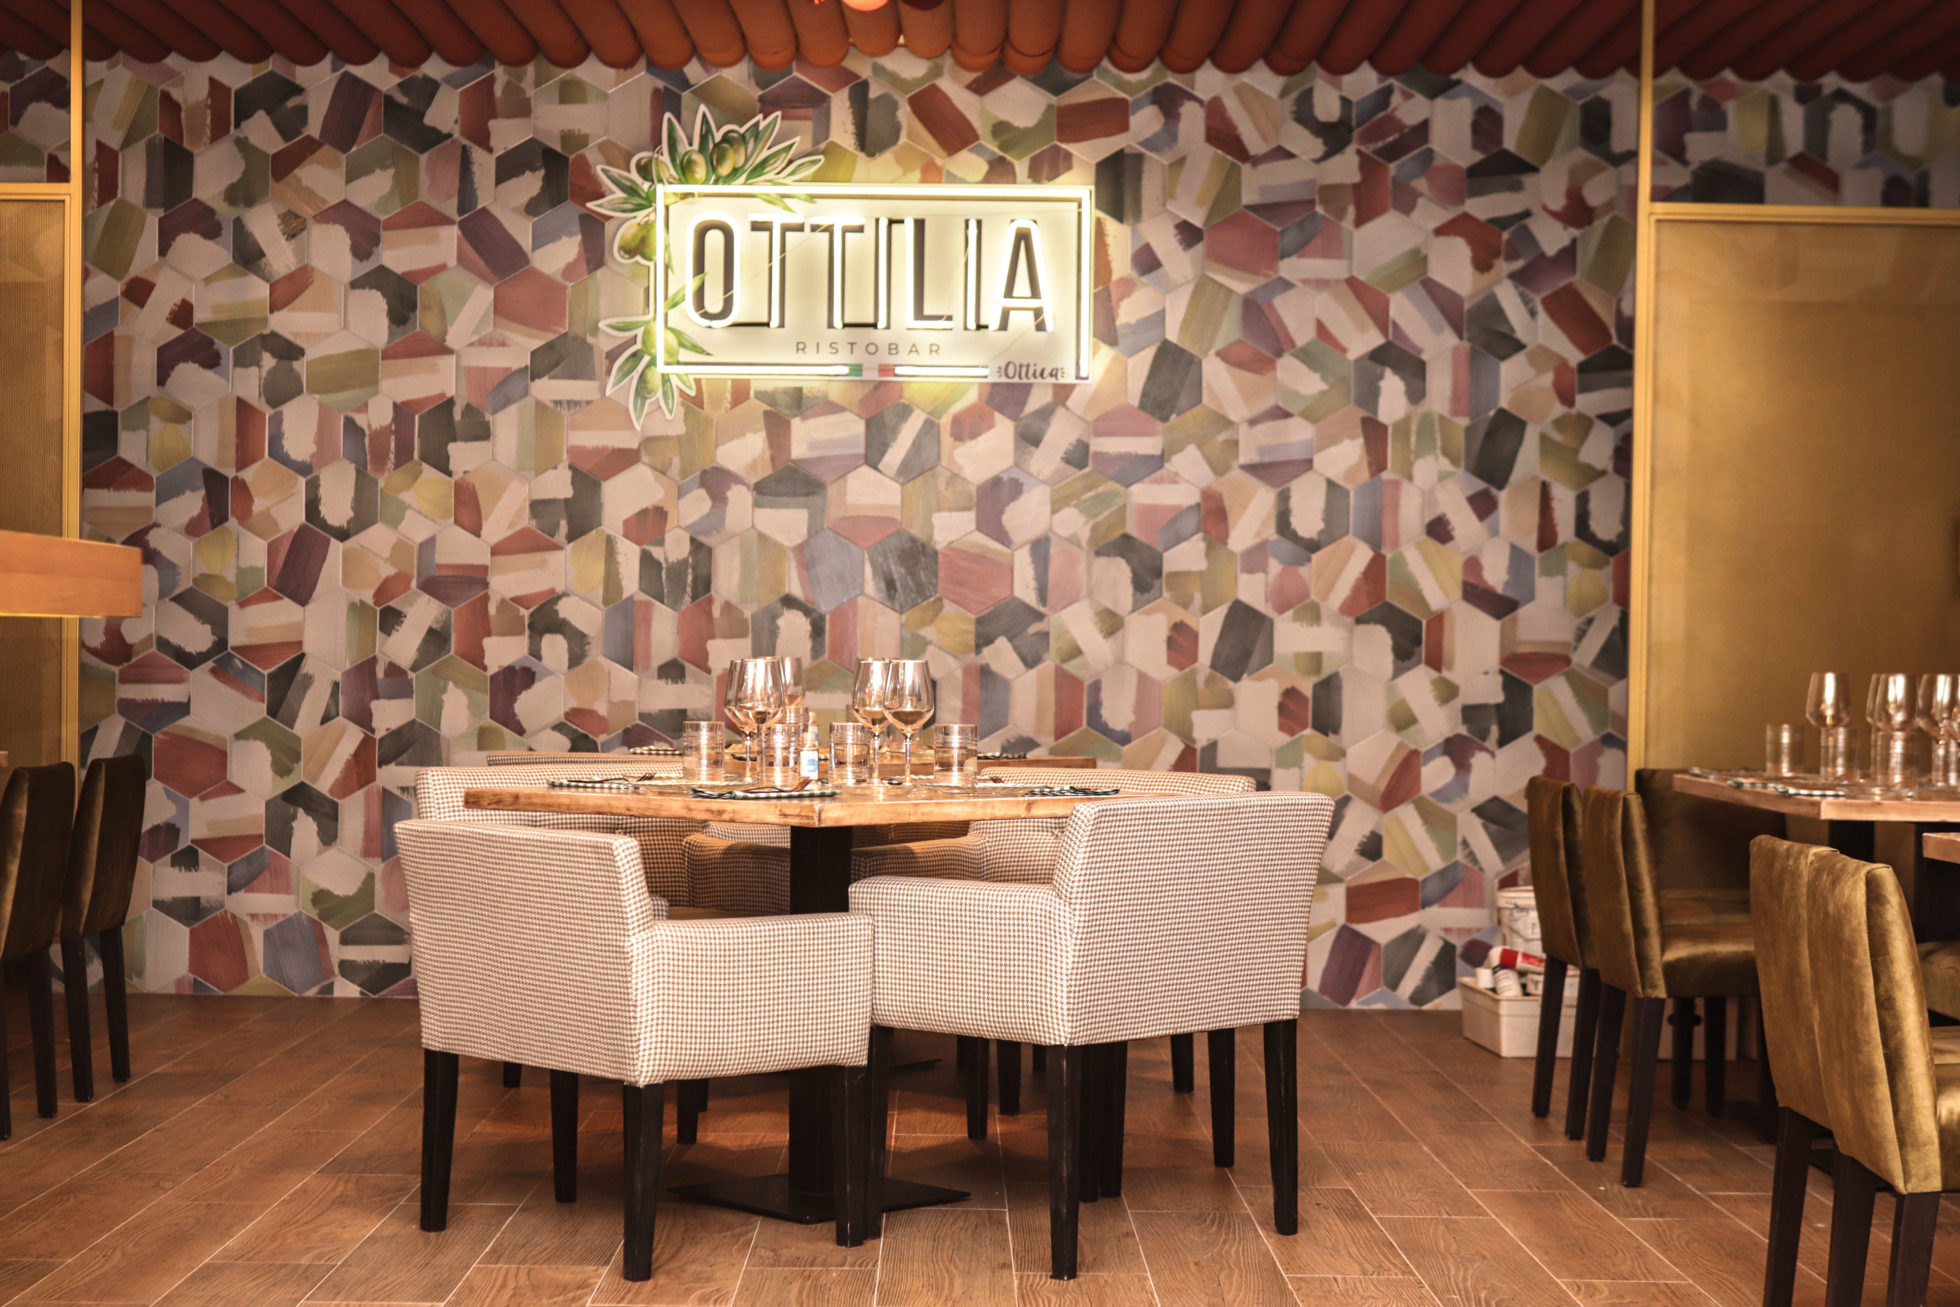 Ottilia restaurante italiano grupo ottica